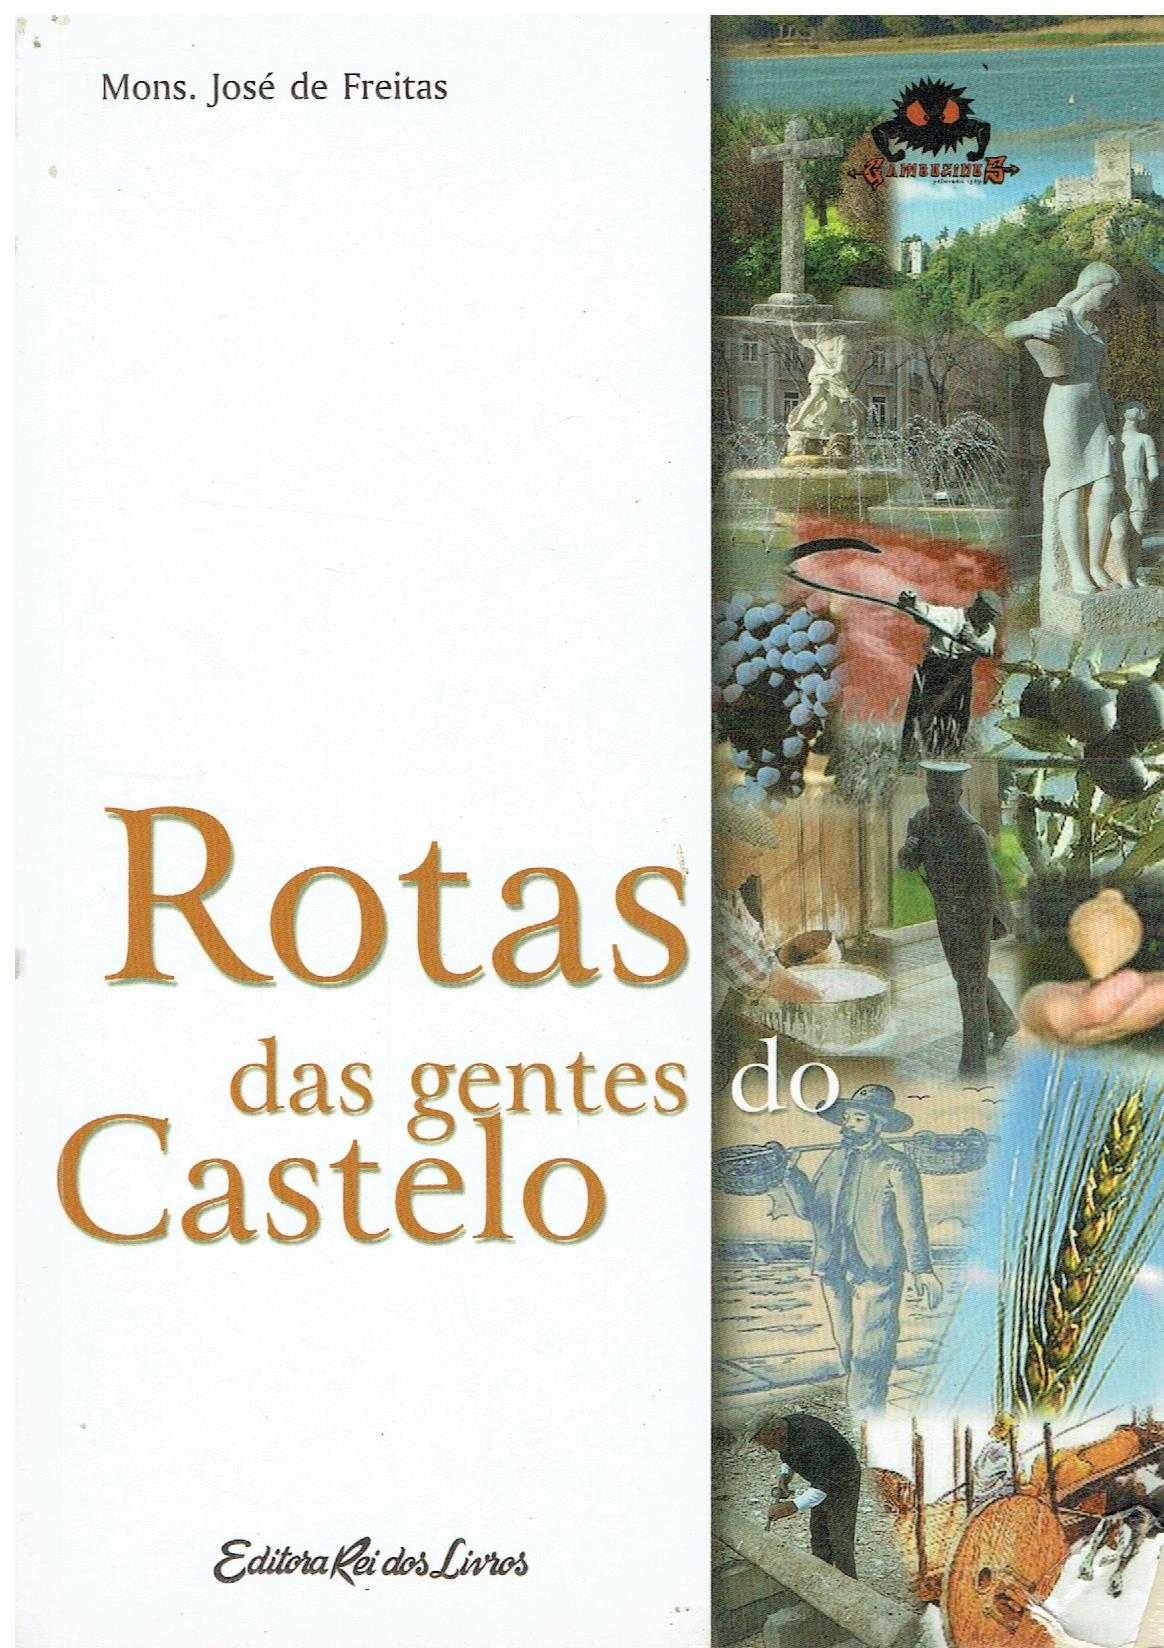 7539
	
Rotas das gentes do castelo (Sesimbra)
de José de Freitas